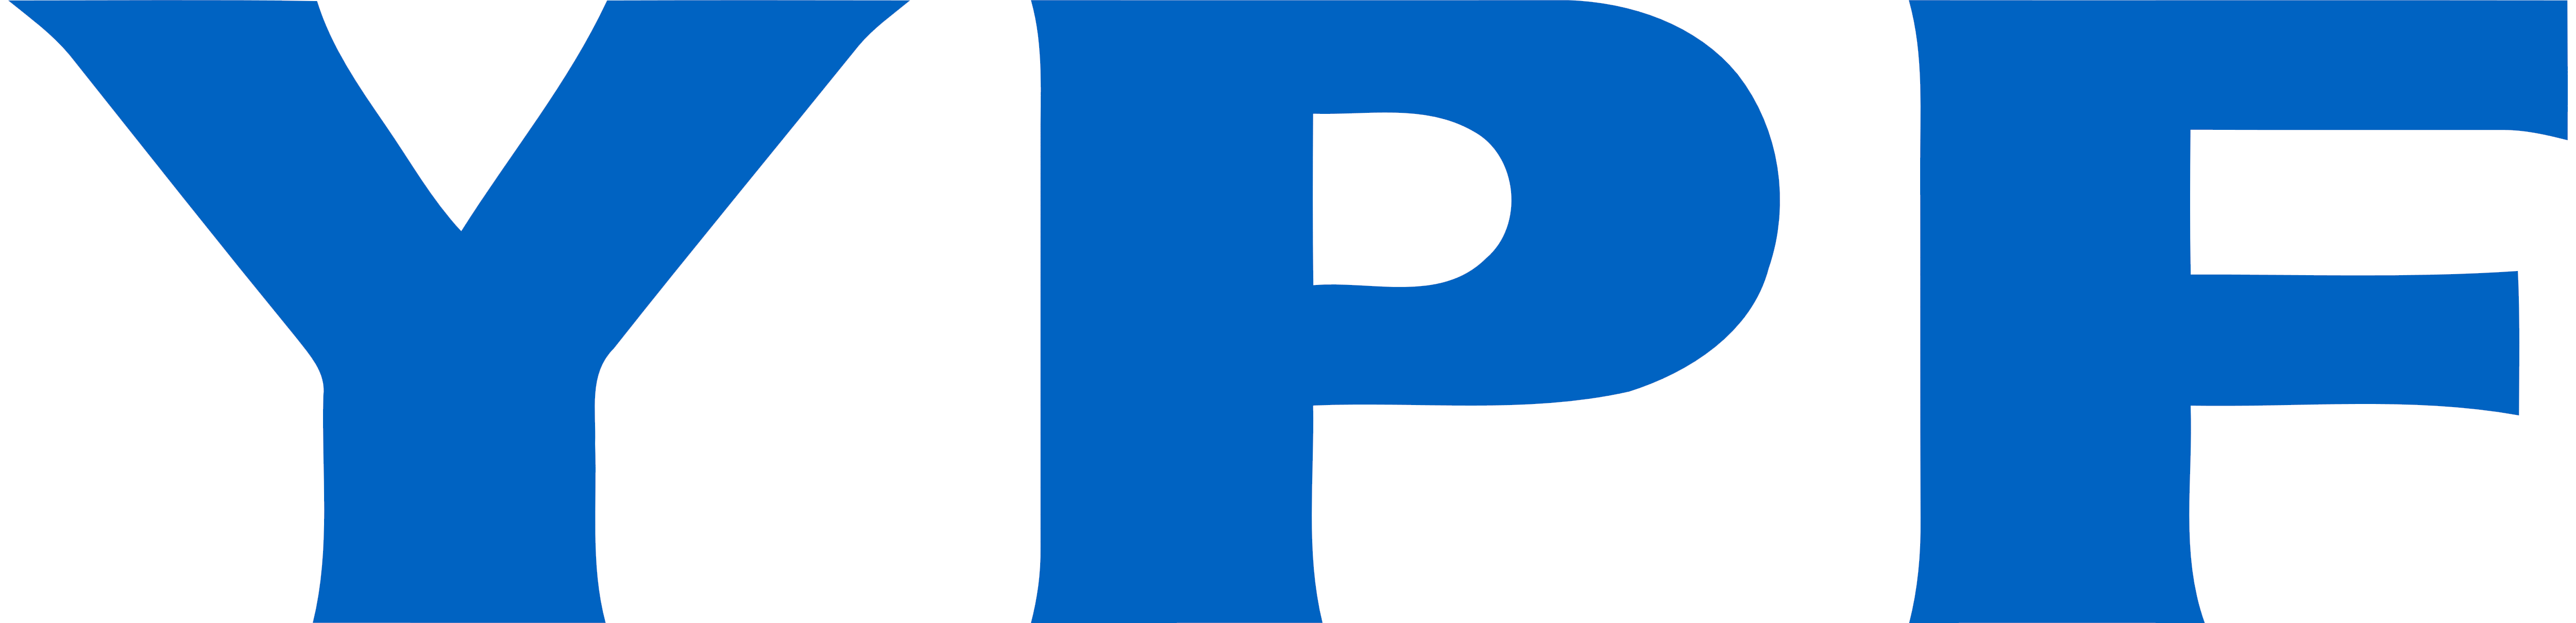 YPF – Logos Download